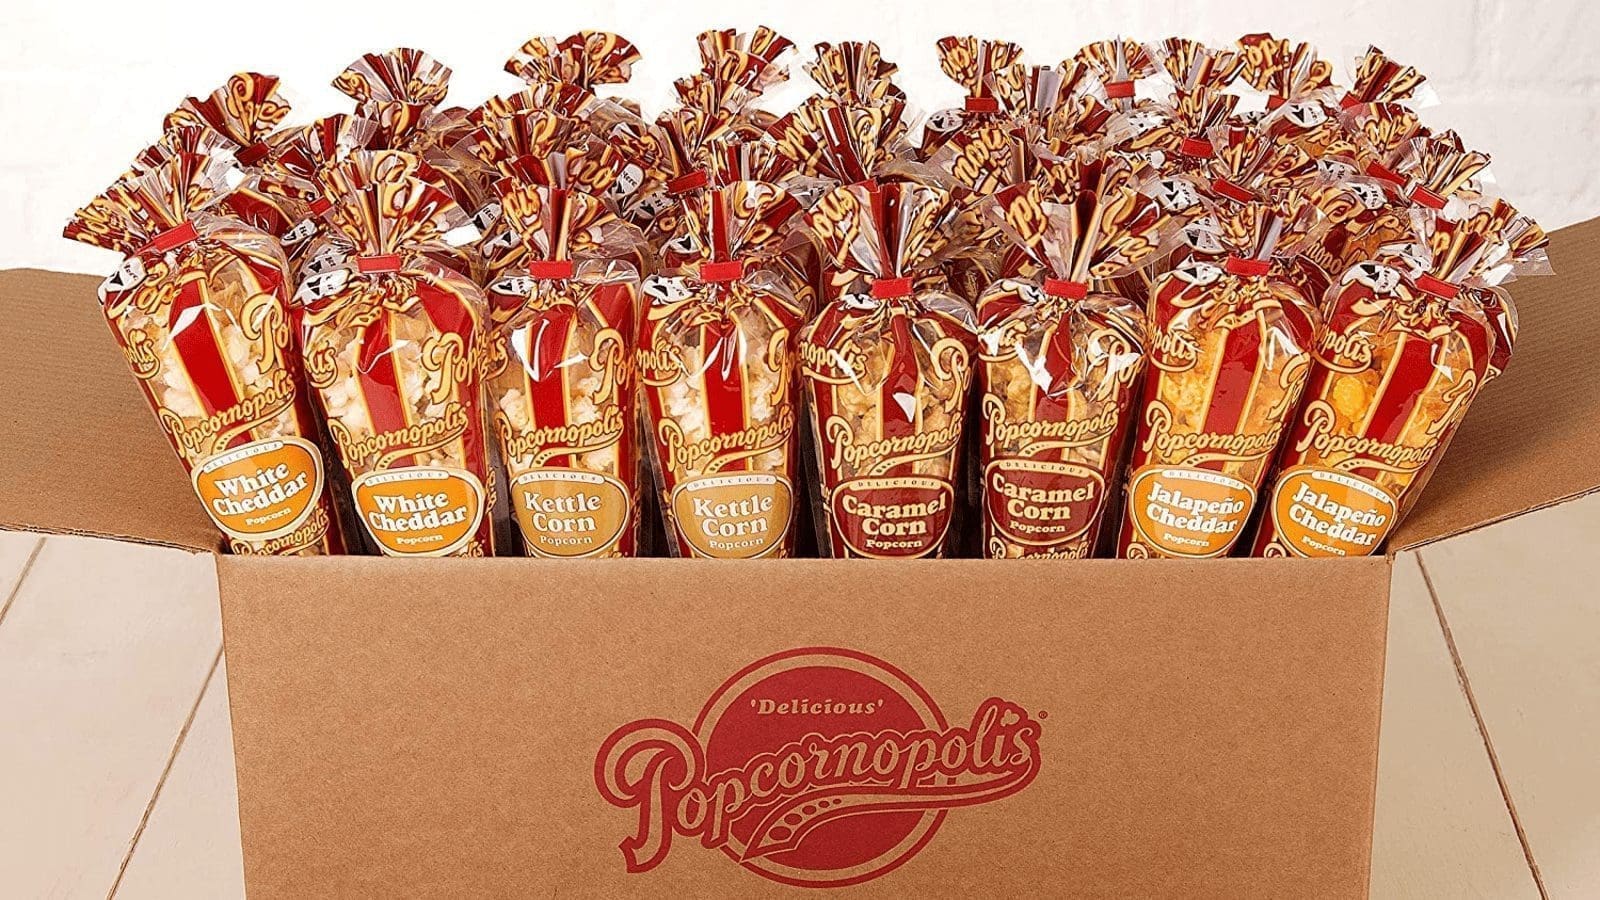 Grupo Bimbo enters US ready-to-eat popcorn market with acquisition of Popcornopolis